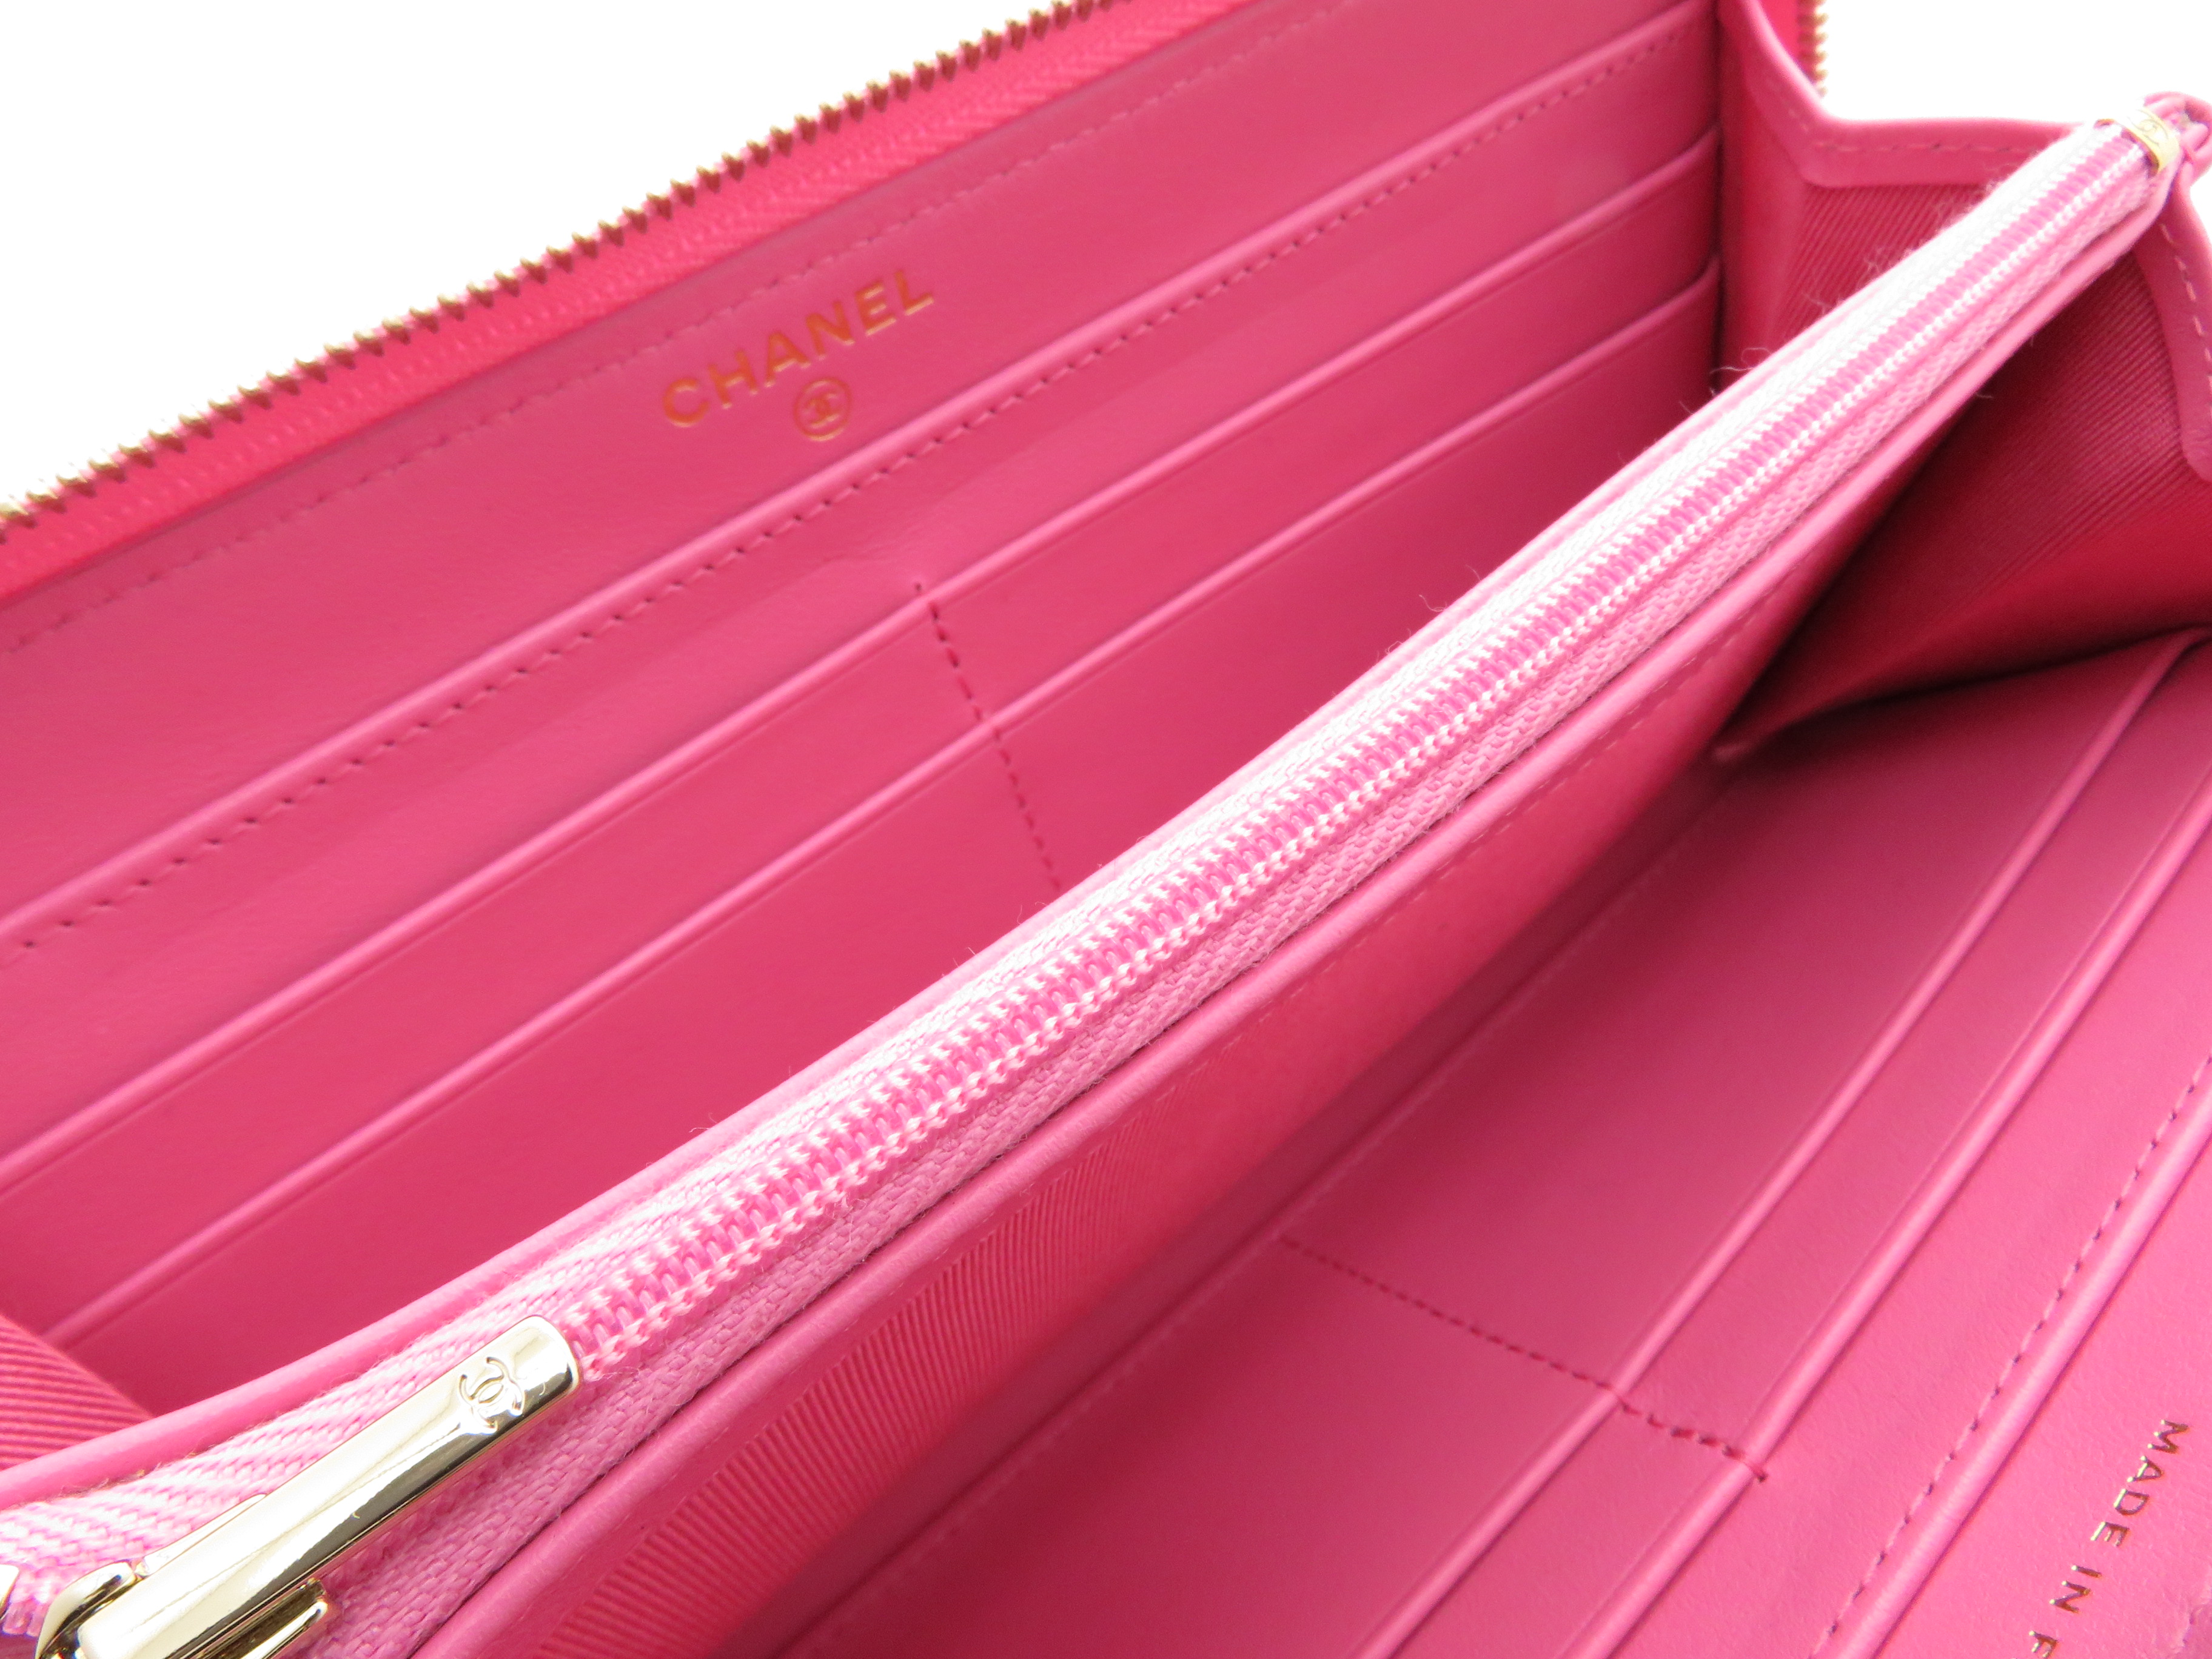 Chanel シャネル マトラッセラウンド長財布 ピンク Gp キャビア 437 の購入なら 質 の大黒屋 公式